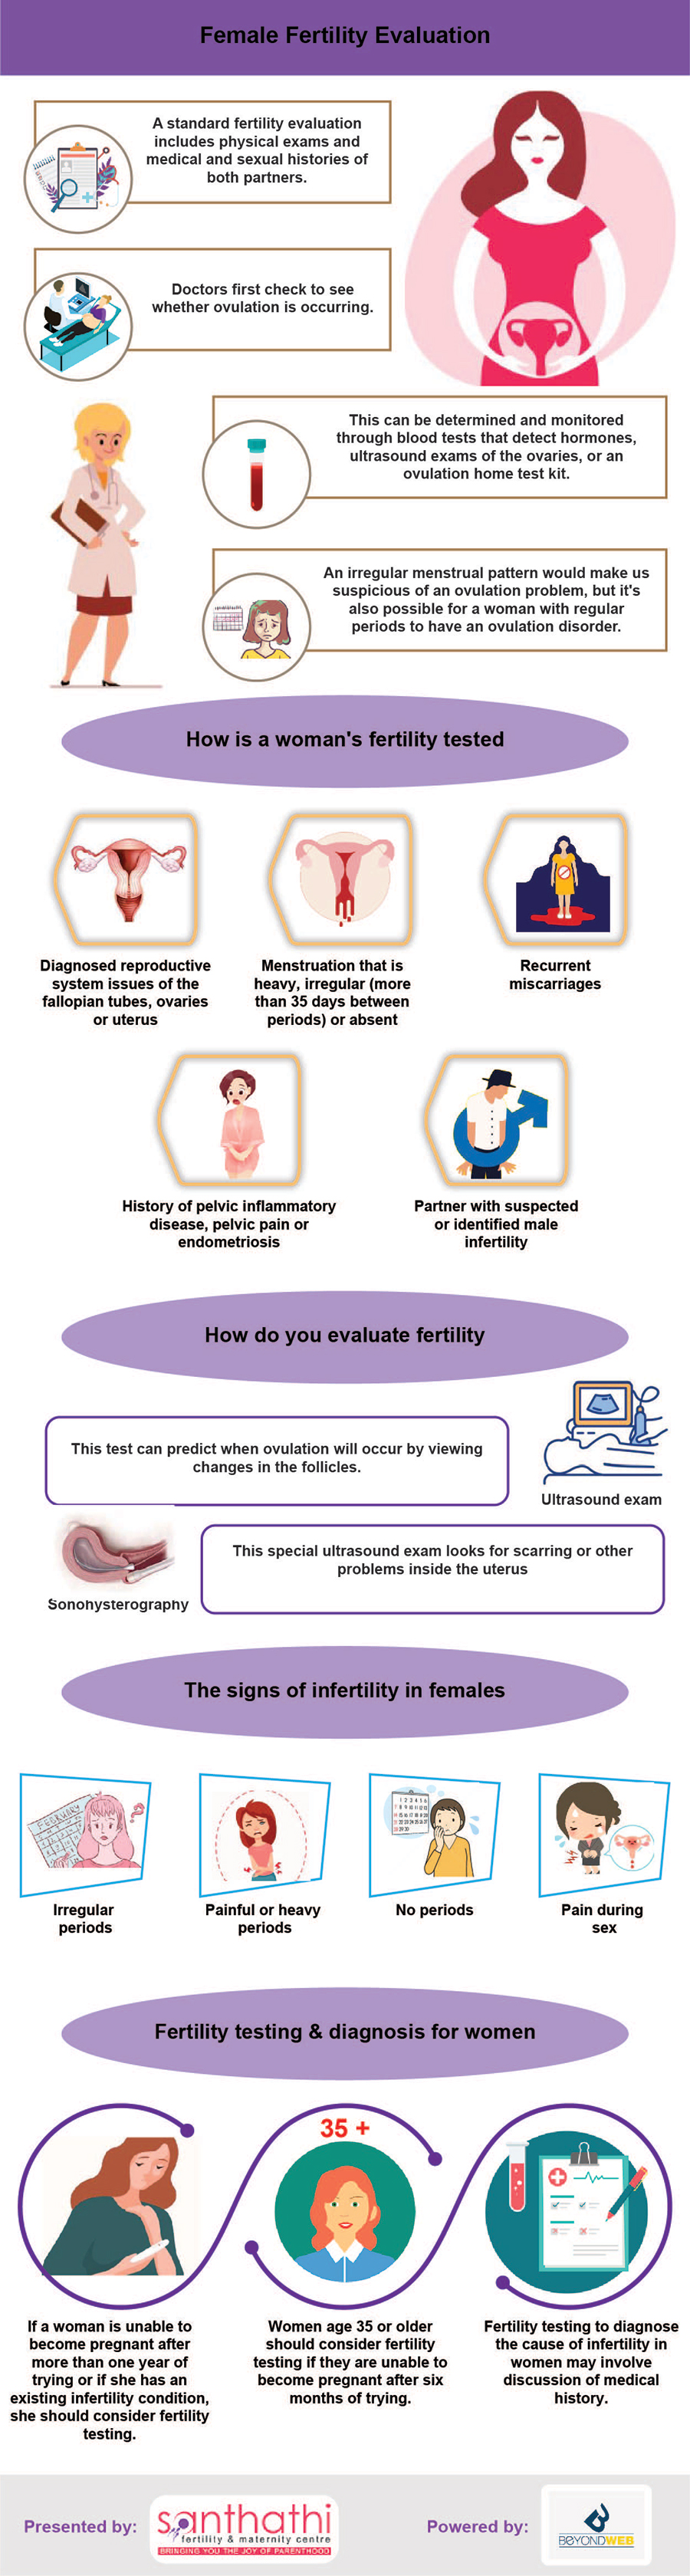 Female Fertility Evaluation